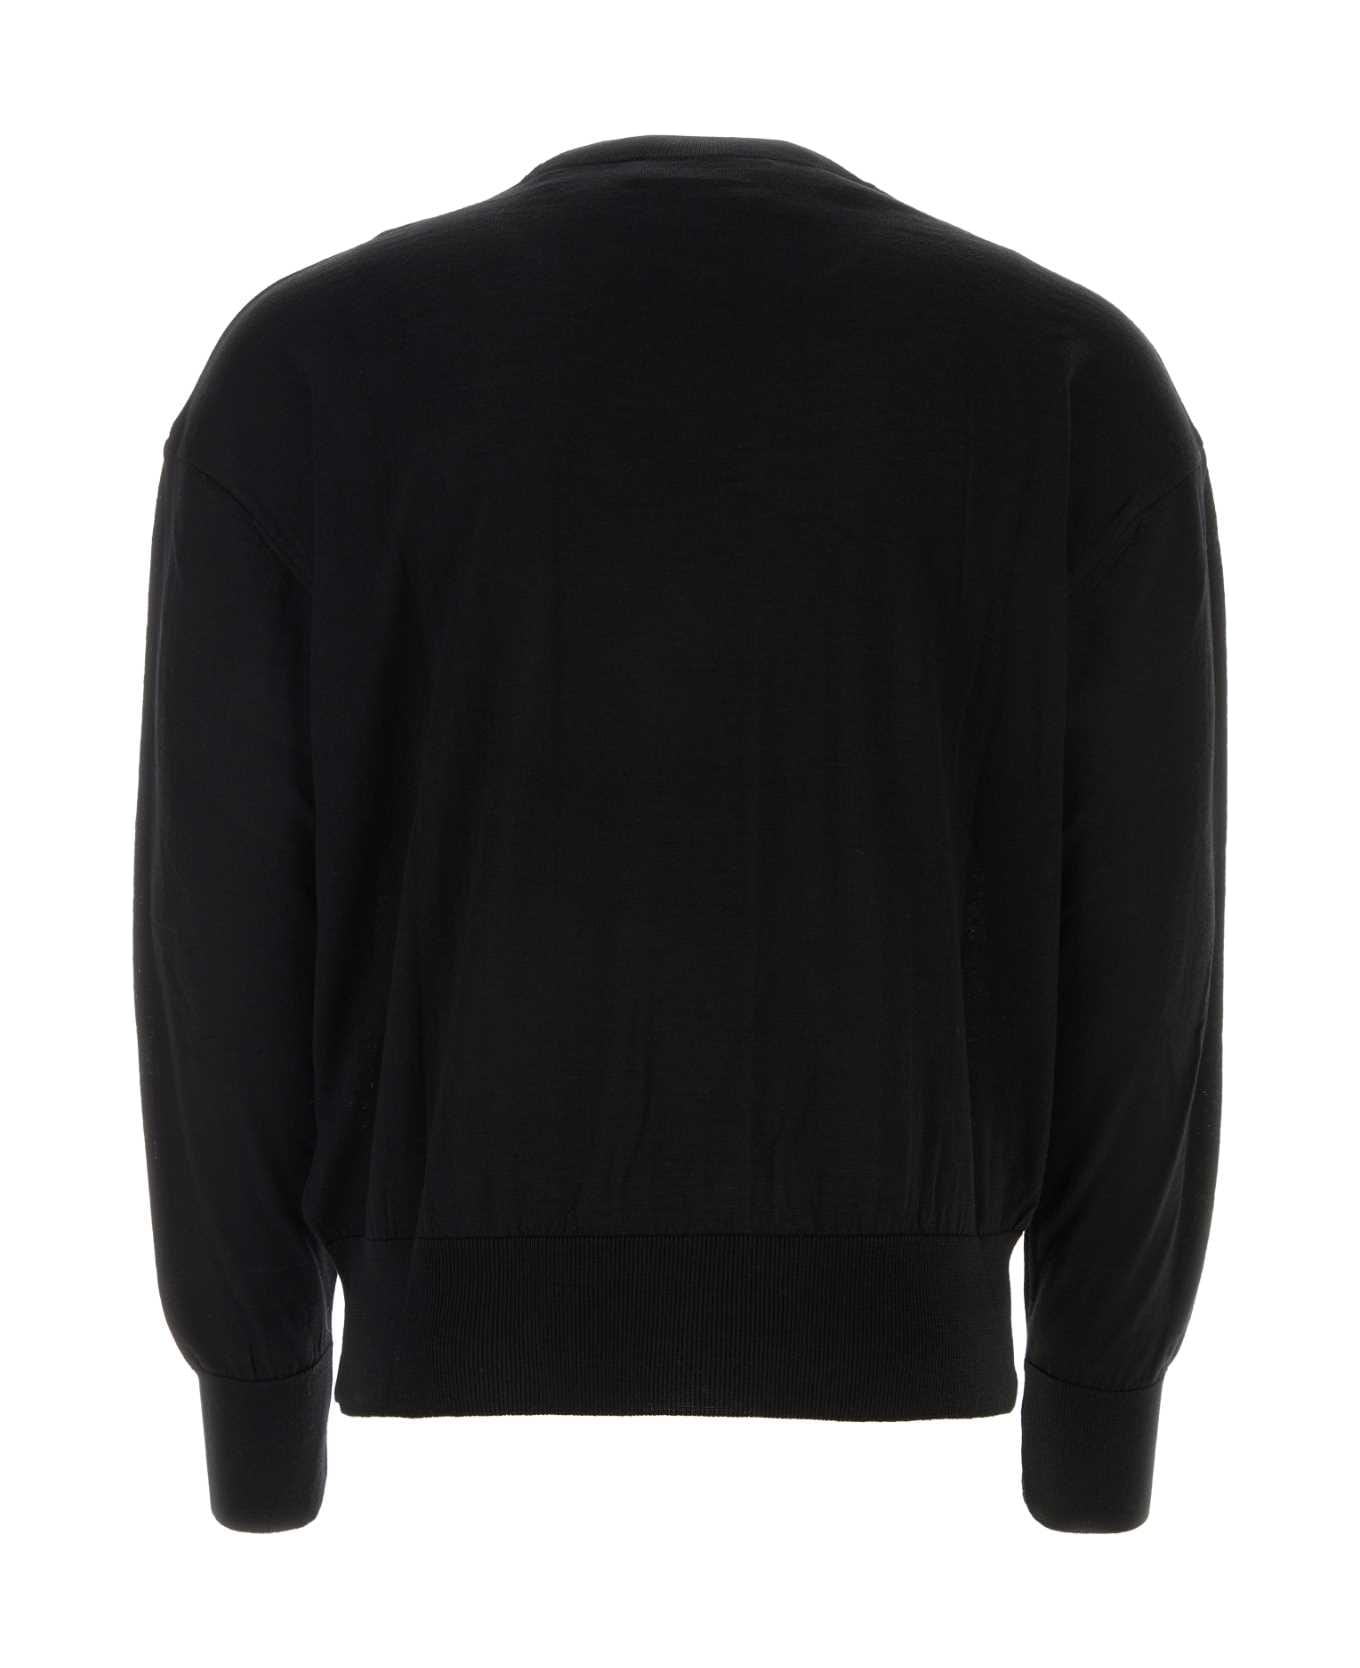 Ami Alexandre Mattiussi Black Wool Sweater - Black